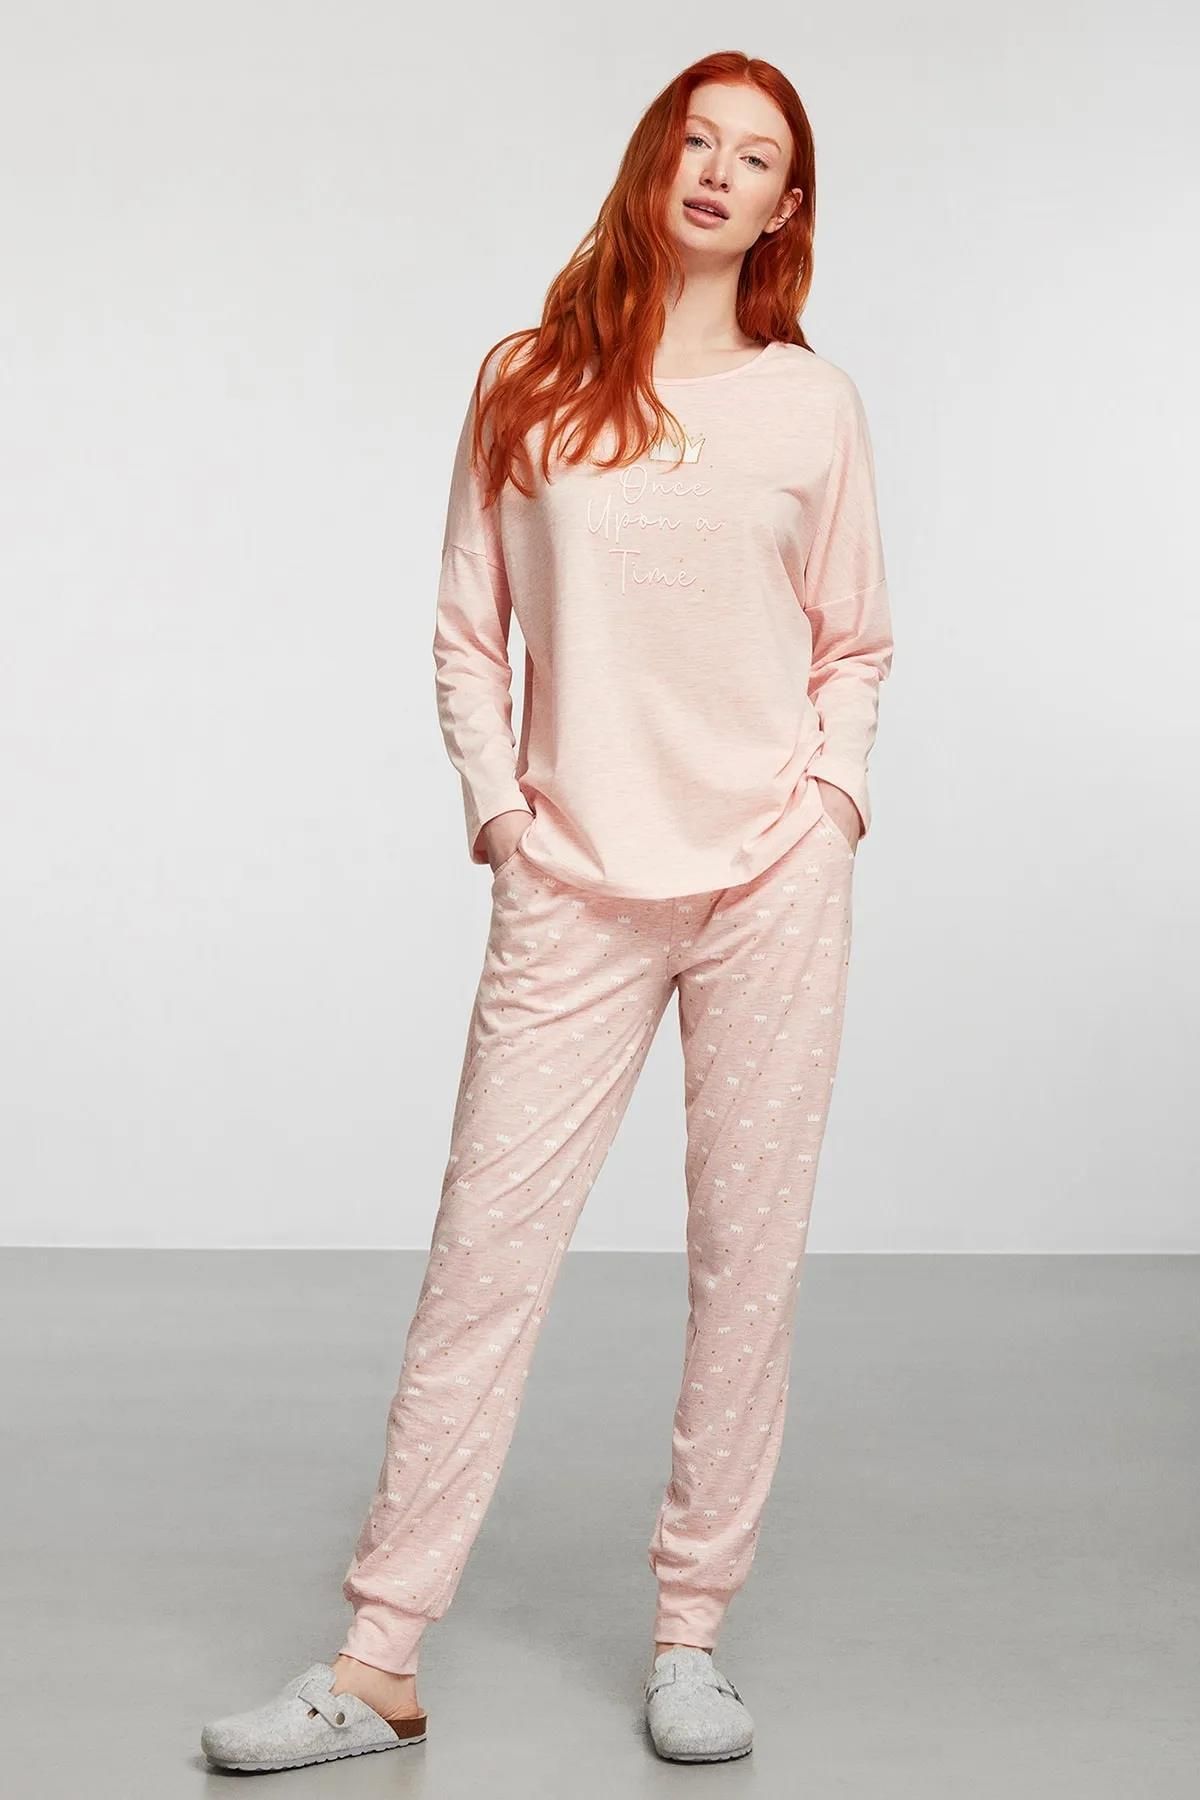 Catherines Pijama Takım Oyster Pink - Oyster Pink 1916pjtk